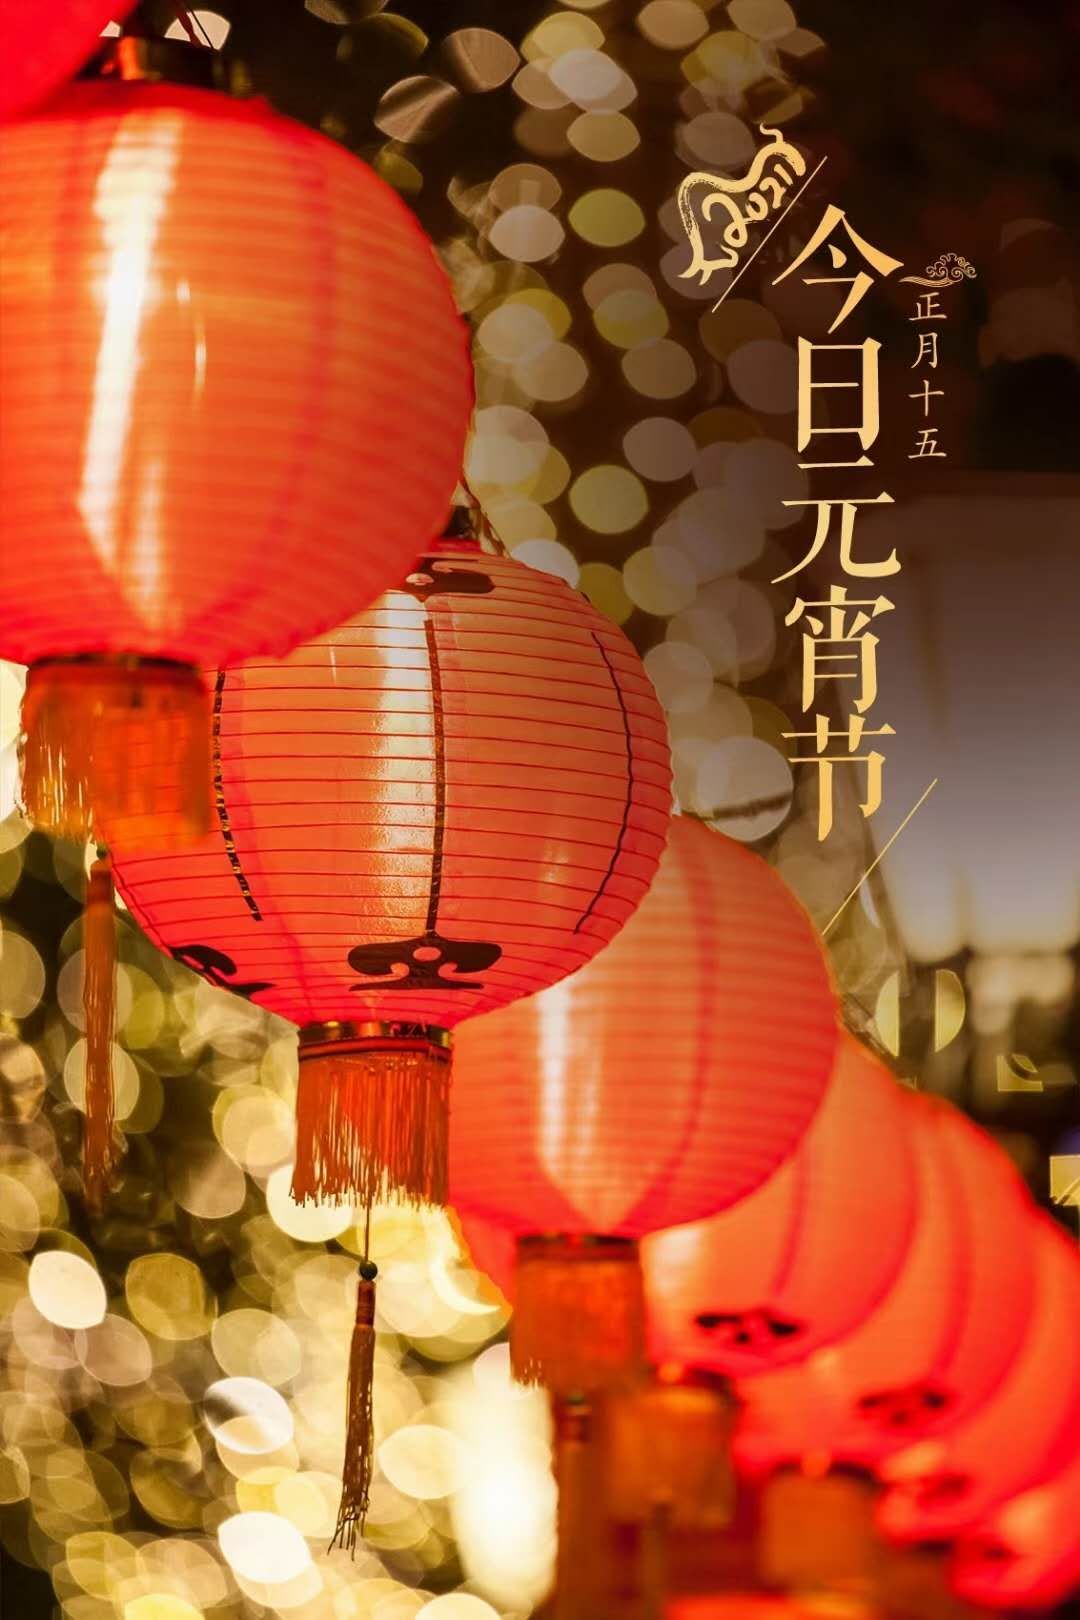 Mike Ye 元宵节快乐 Happy Lantern Festival To All Friends T Co Xdpaxtwl9k Twitter